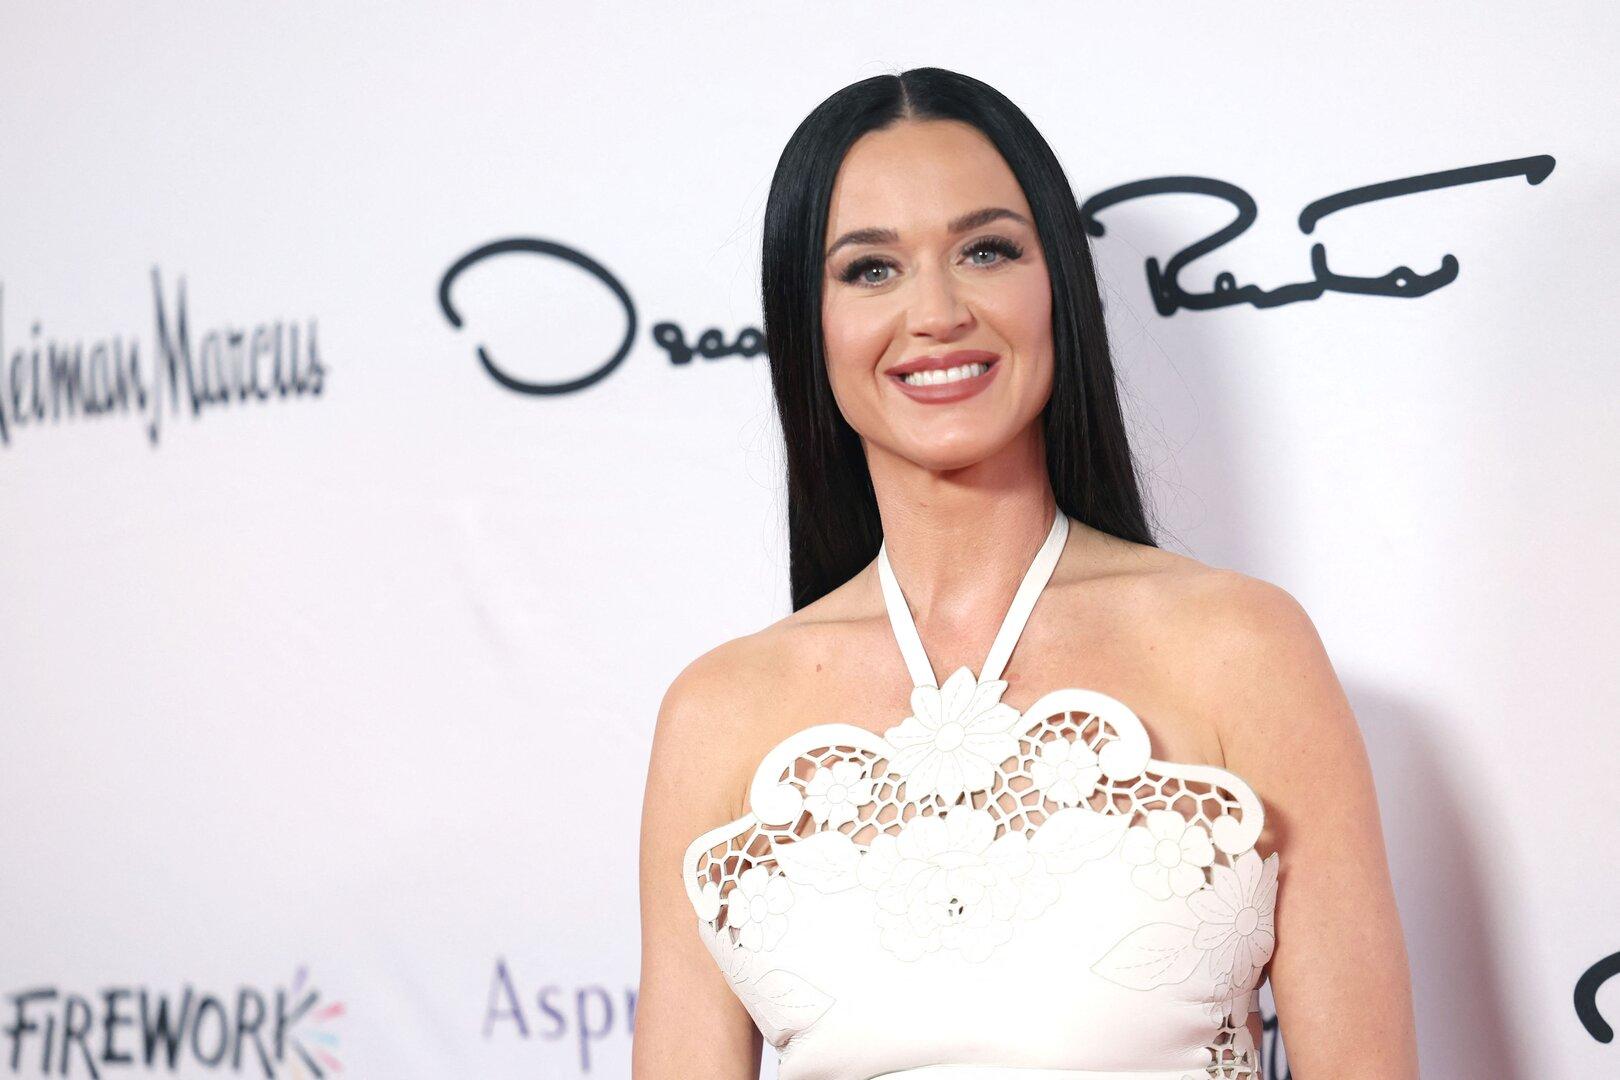 Selbst ihre Mutter wurde getäuscht: KI-Fotos von Katy Perry bei Met Gala gehen viral